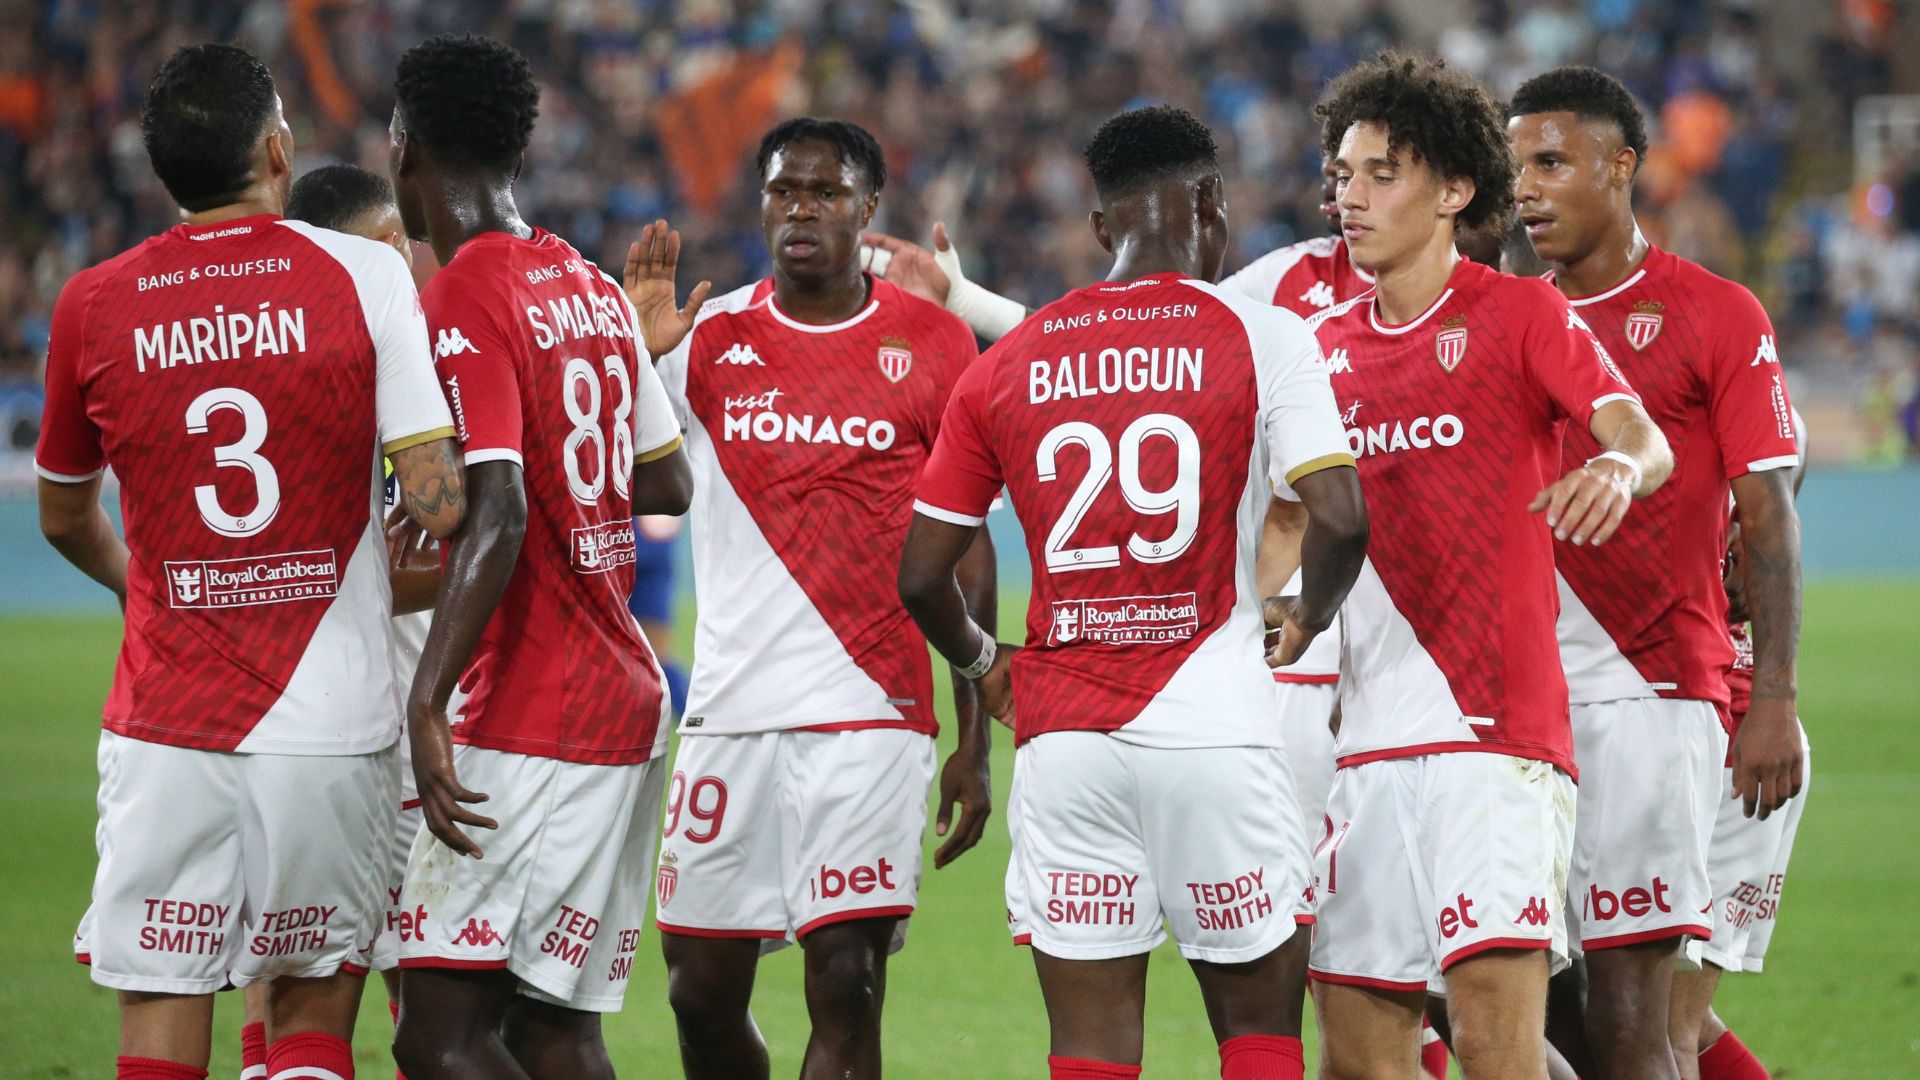 Reims - Mónaco: Quem vencerá o jogo de cartaz da 8.ª jornada da Ligue 1?